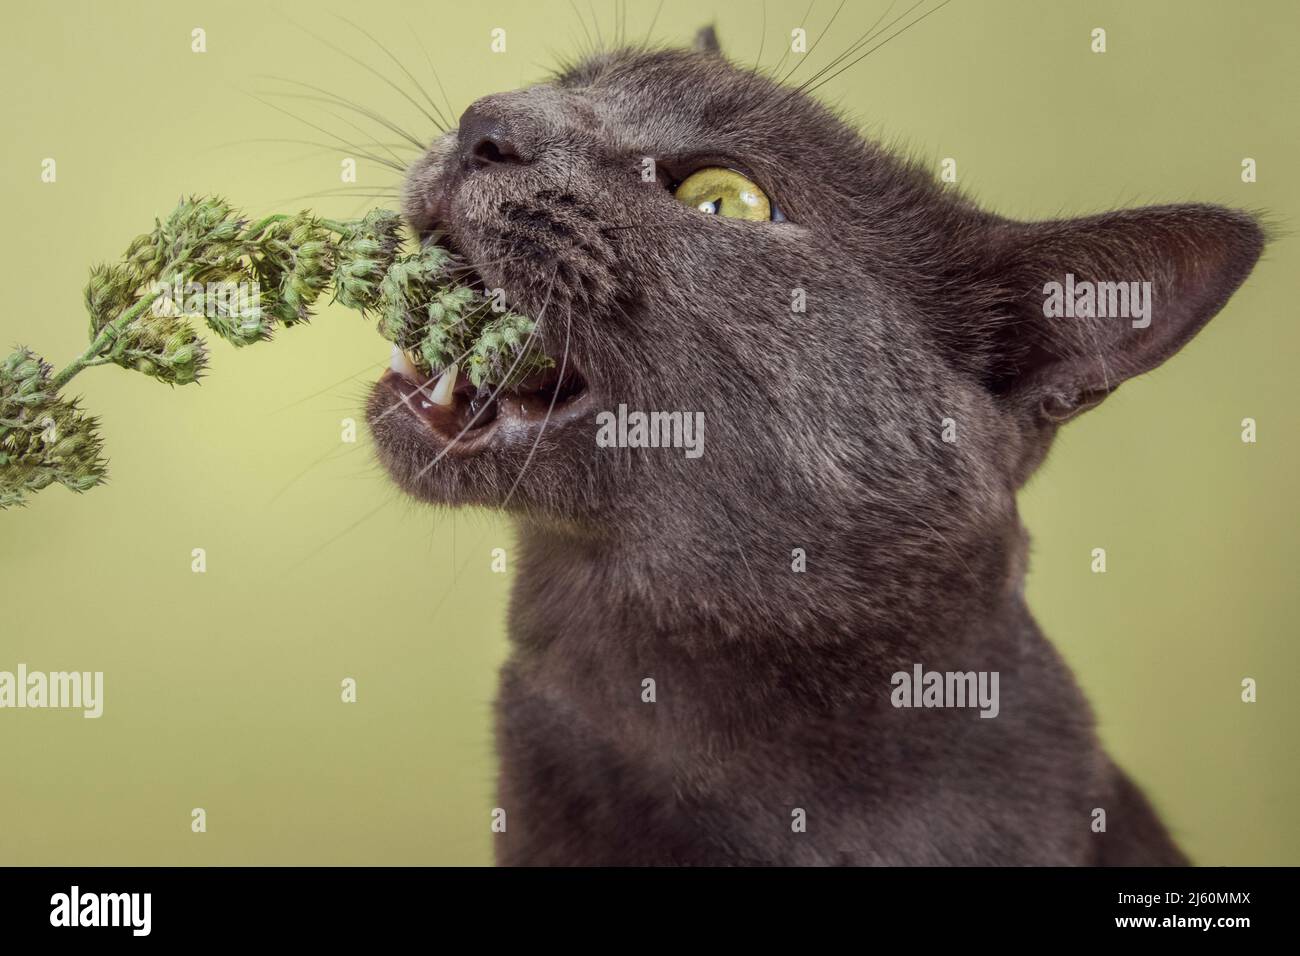 Modernes Studioporträt einer Katze, die begeistert eine Knospe Katzenminze frisst. Stockfoto